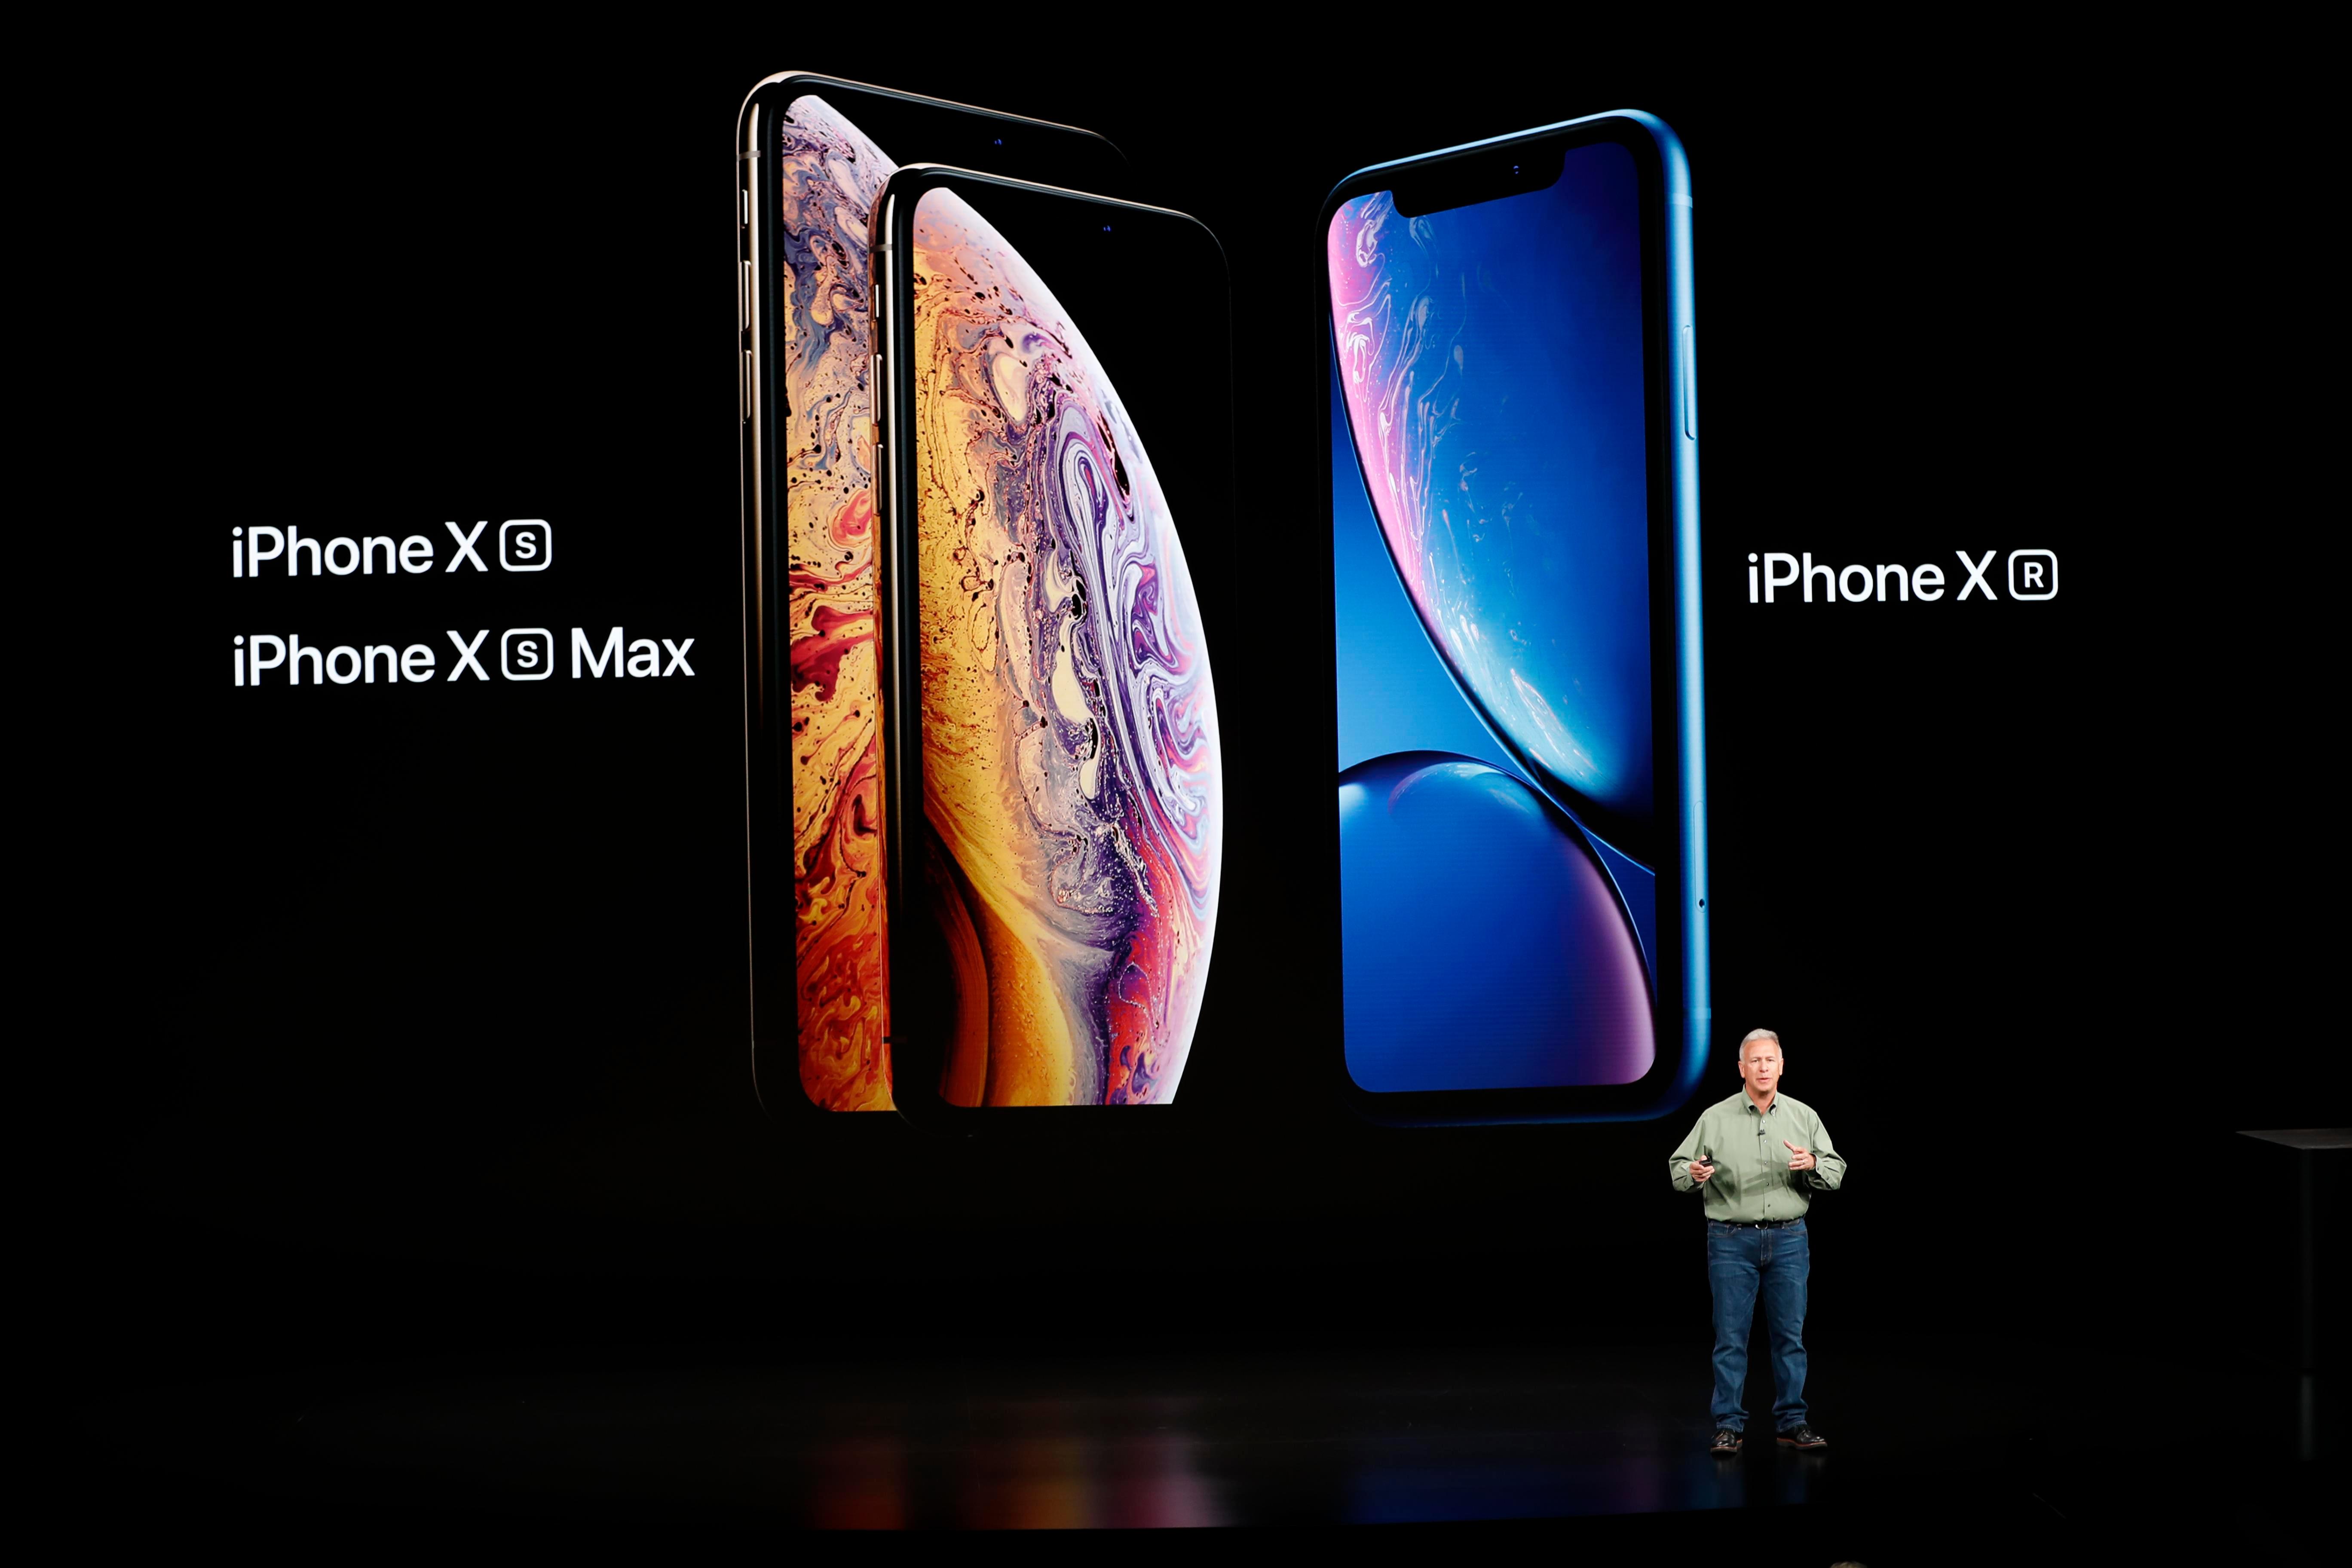   Последние годы Apple событие ознаменовалось представлением трех новых моделей iPhone